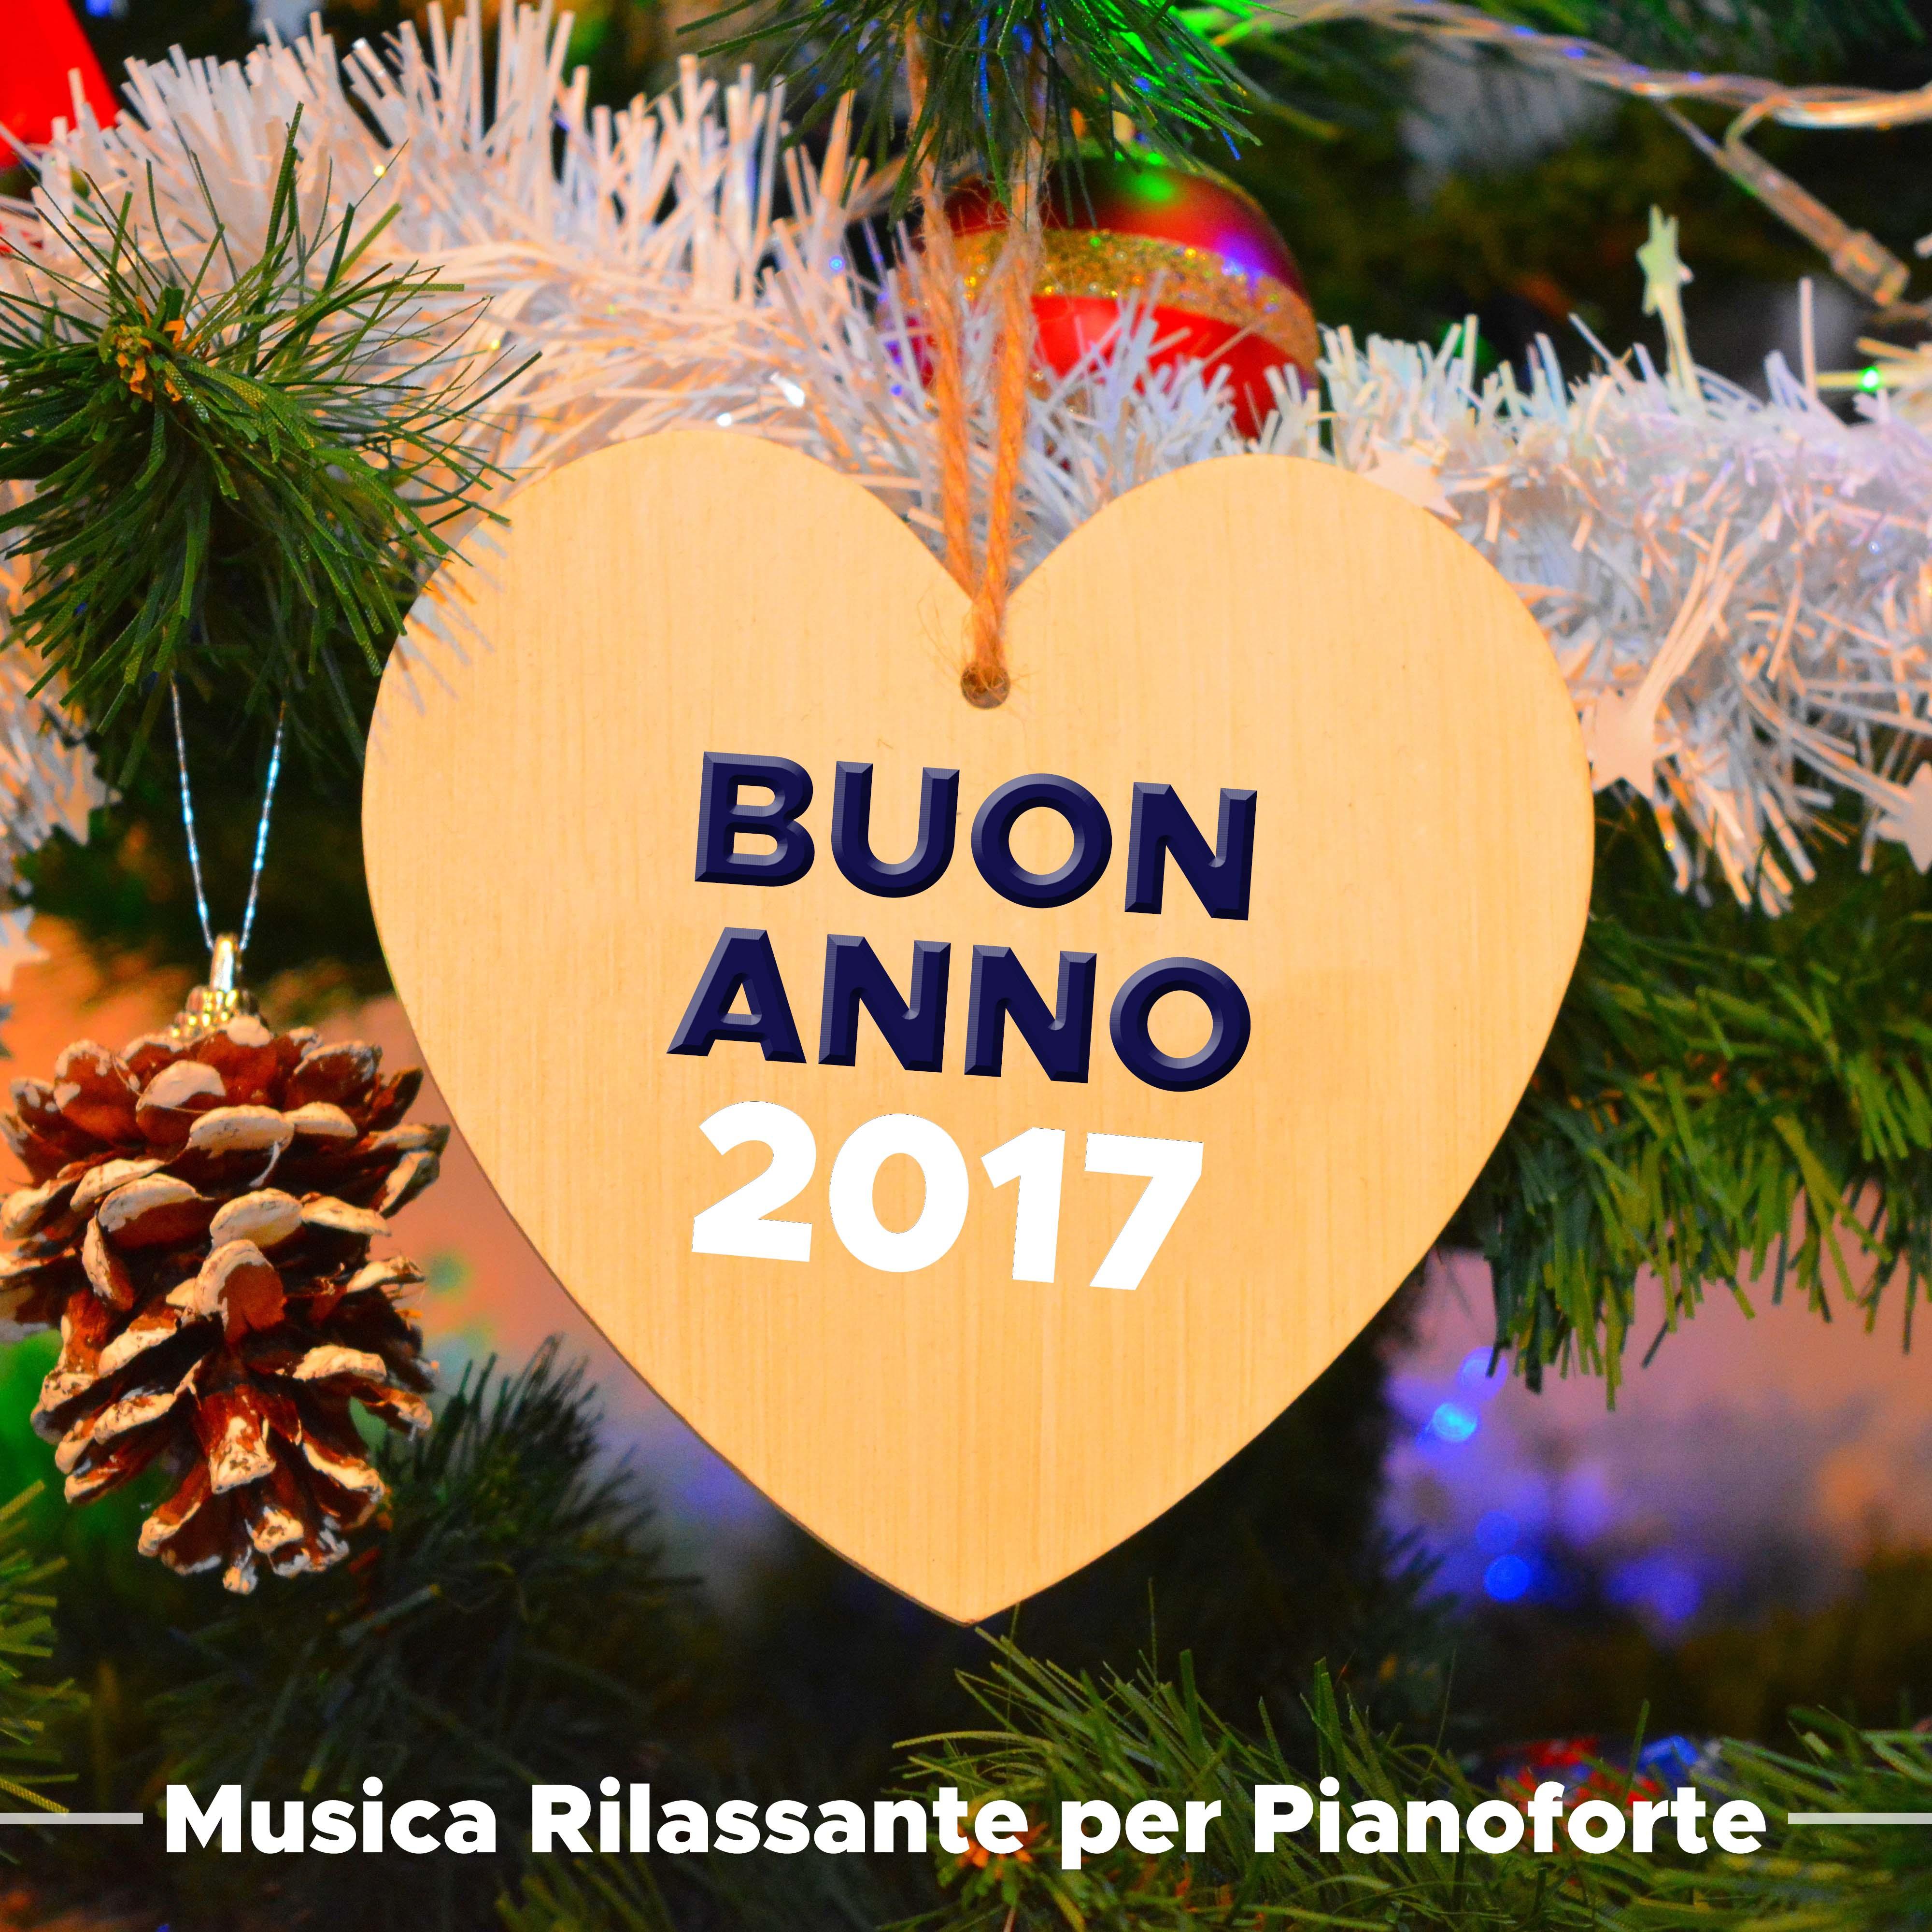 Buon Anno! Musica Rilassante per Pianoforte e Musica Tradizionale per Trovare Pace, Serenita e Relax durante le Vacanze